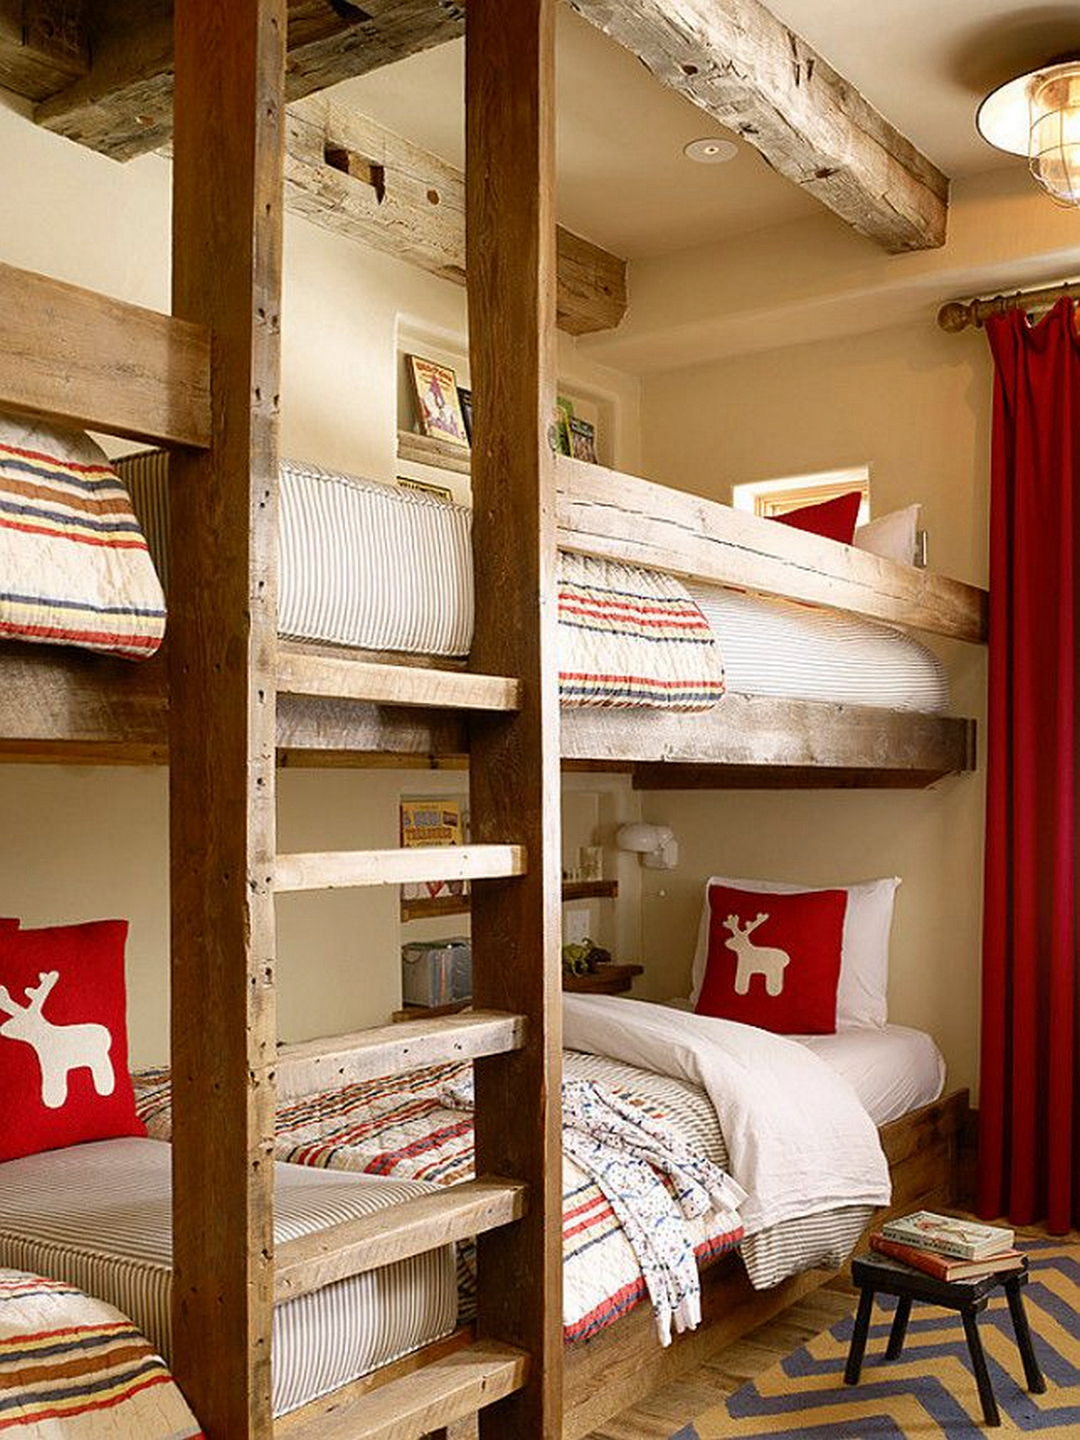 Rustic bunk beds